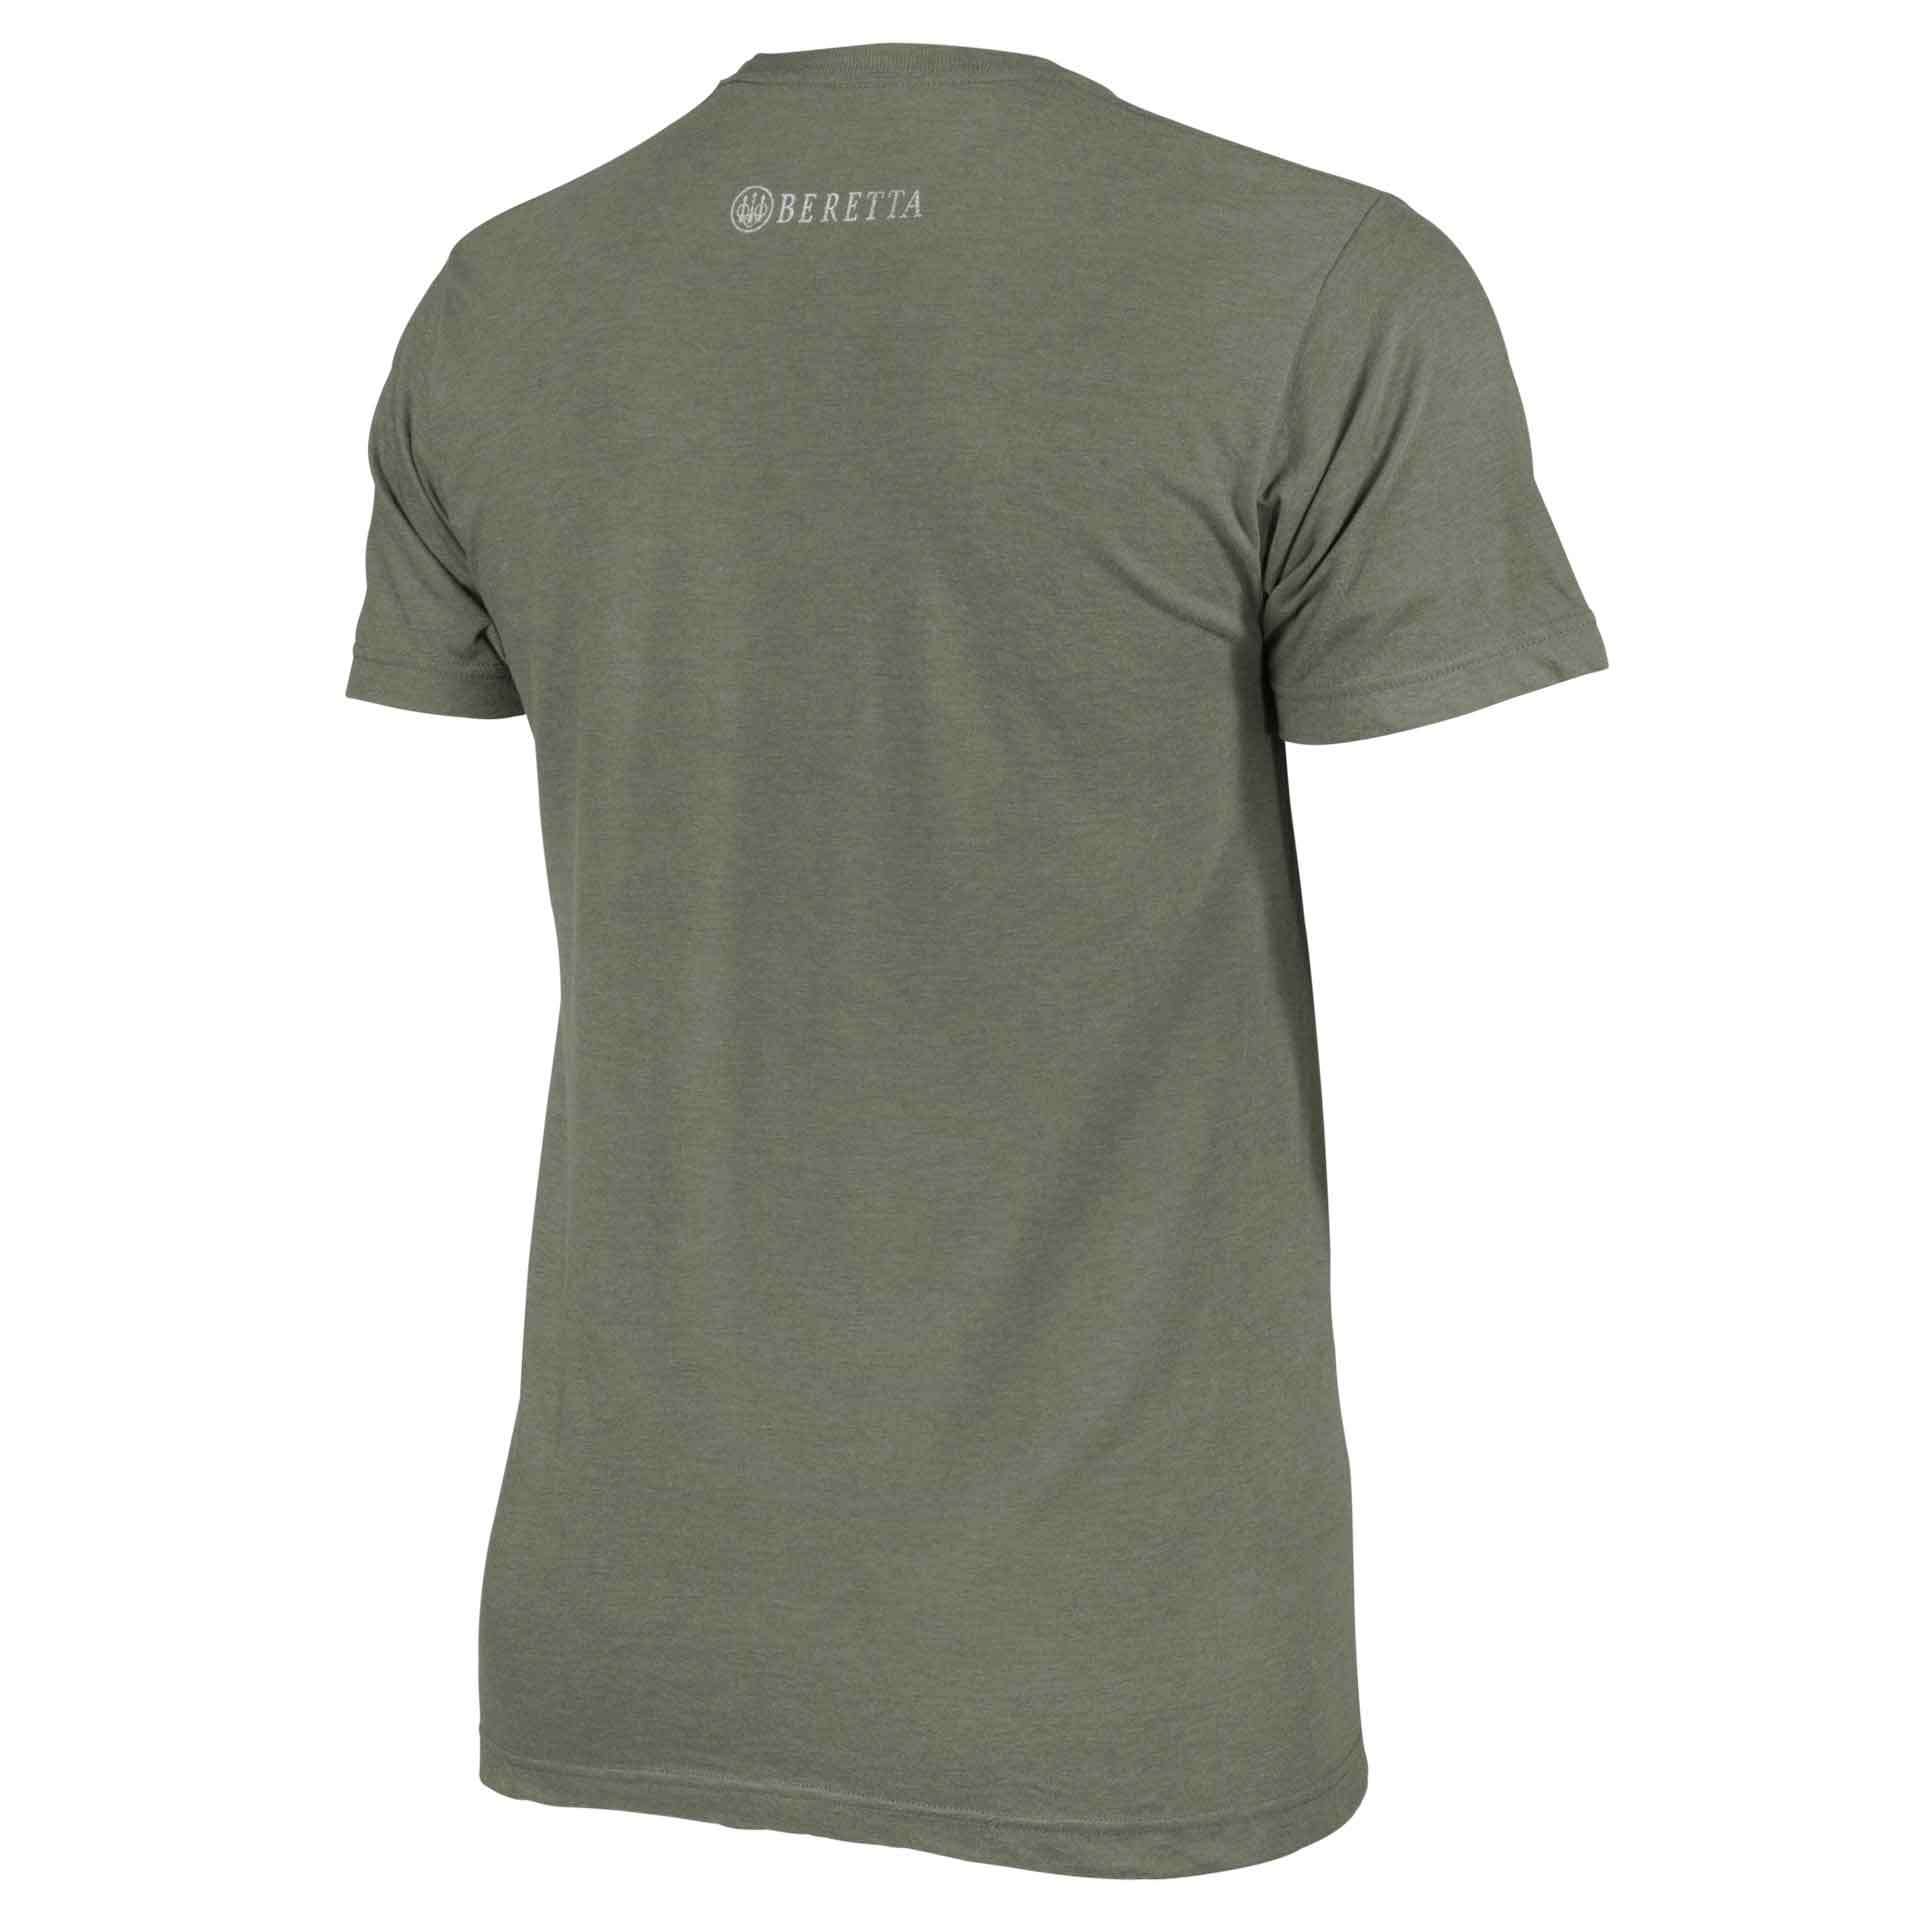 Beretta Distressed Trident T-Shirts TS721T1890